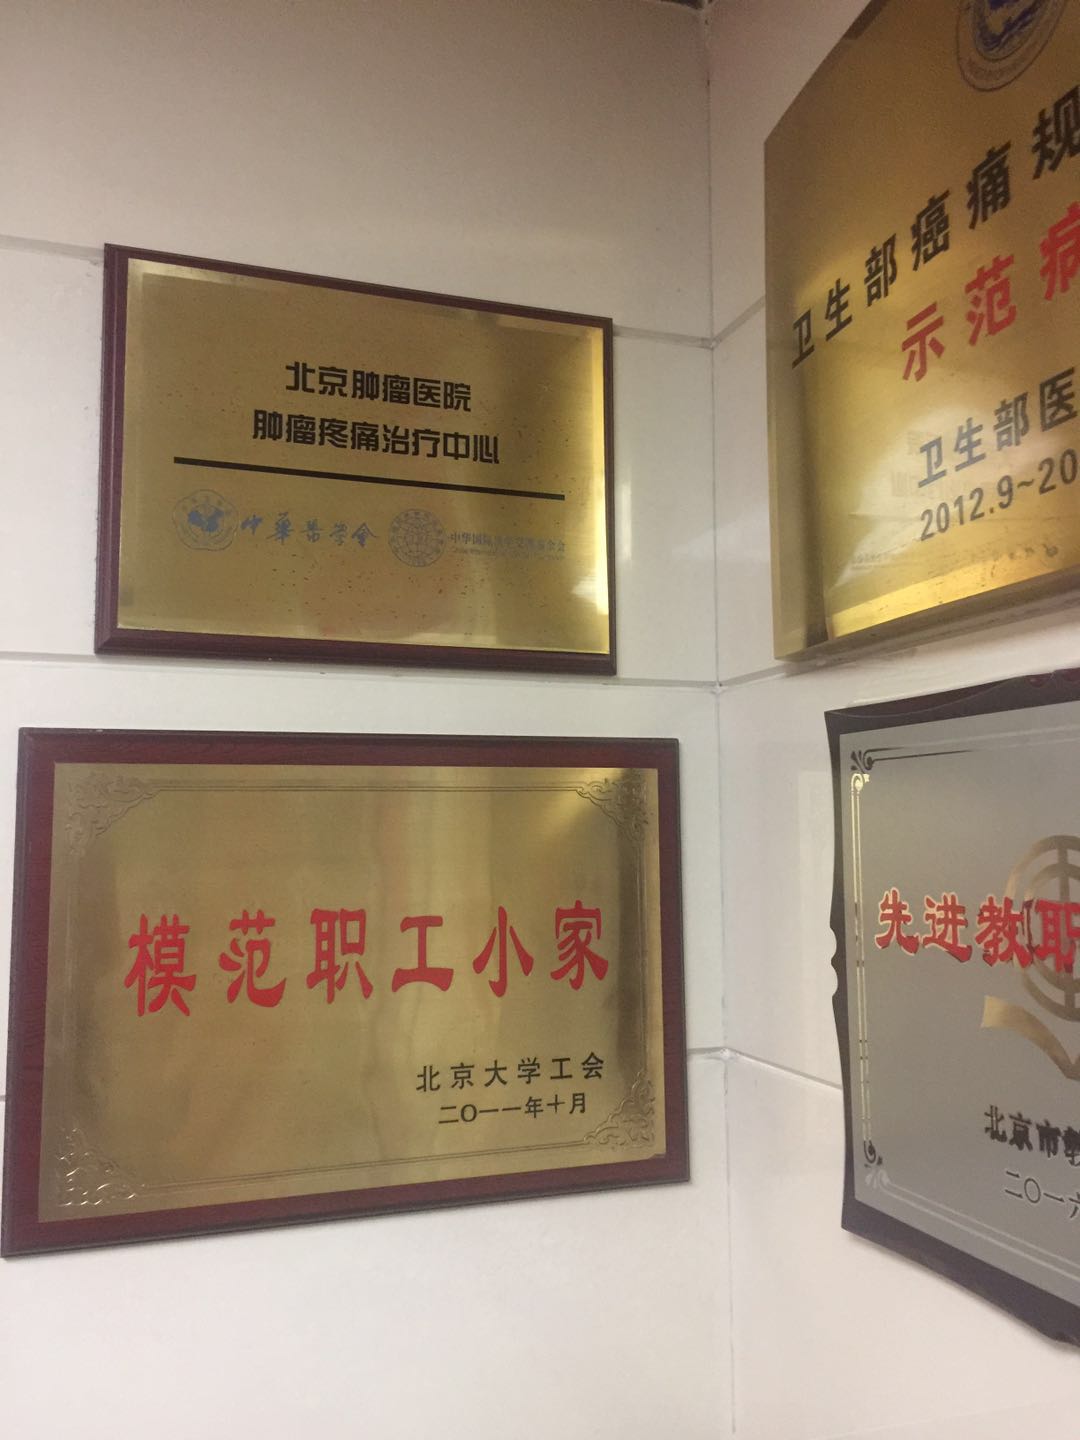 包含北京大学肿瘤医院全天在门口随时联系的词条